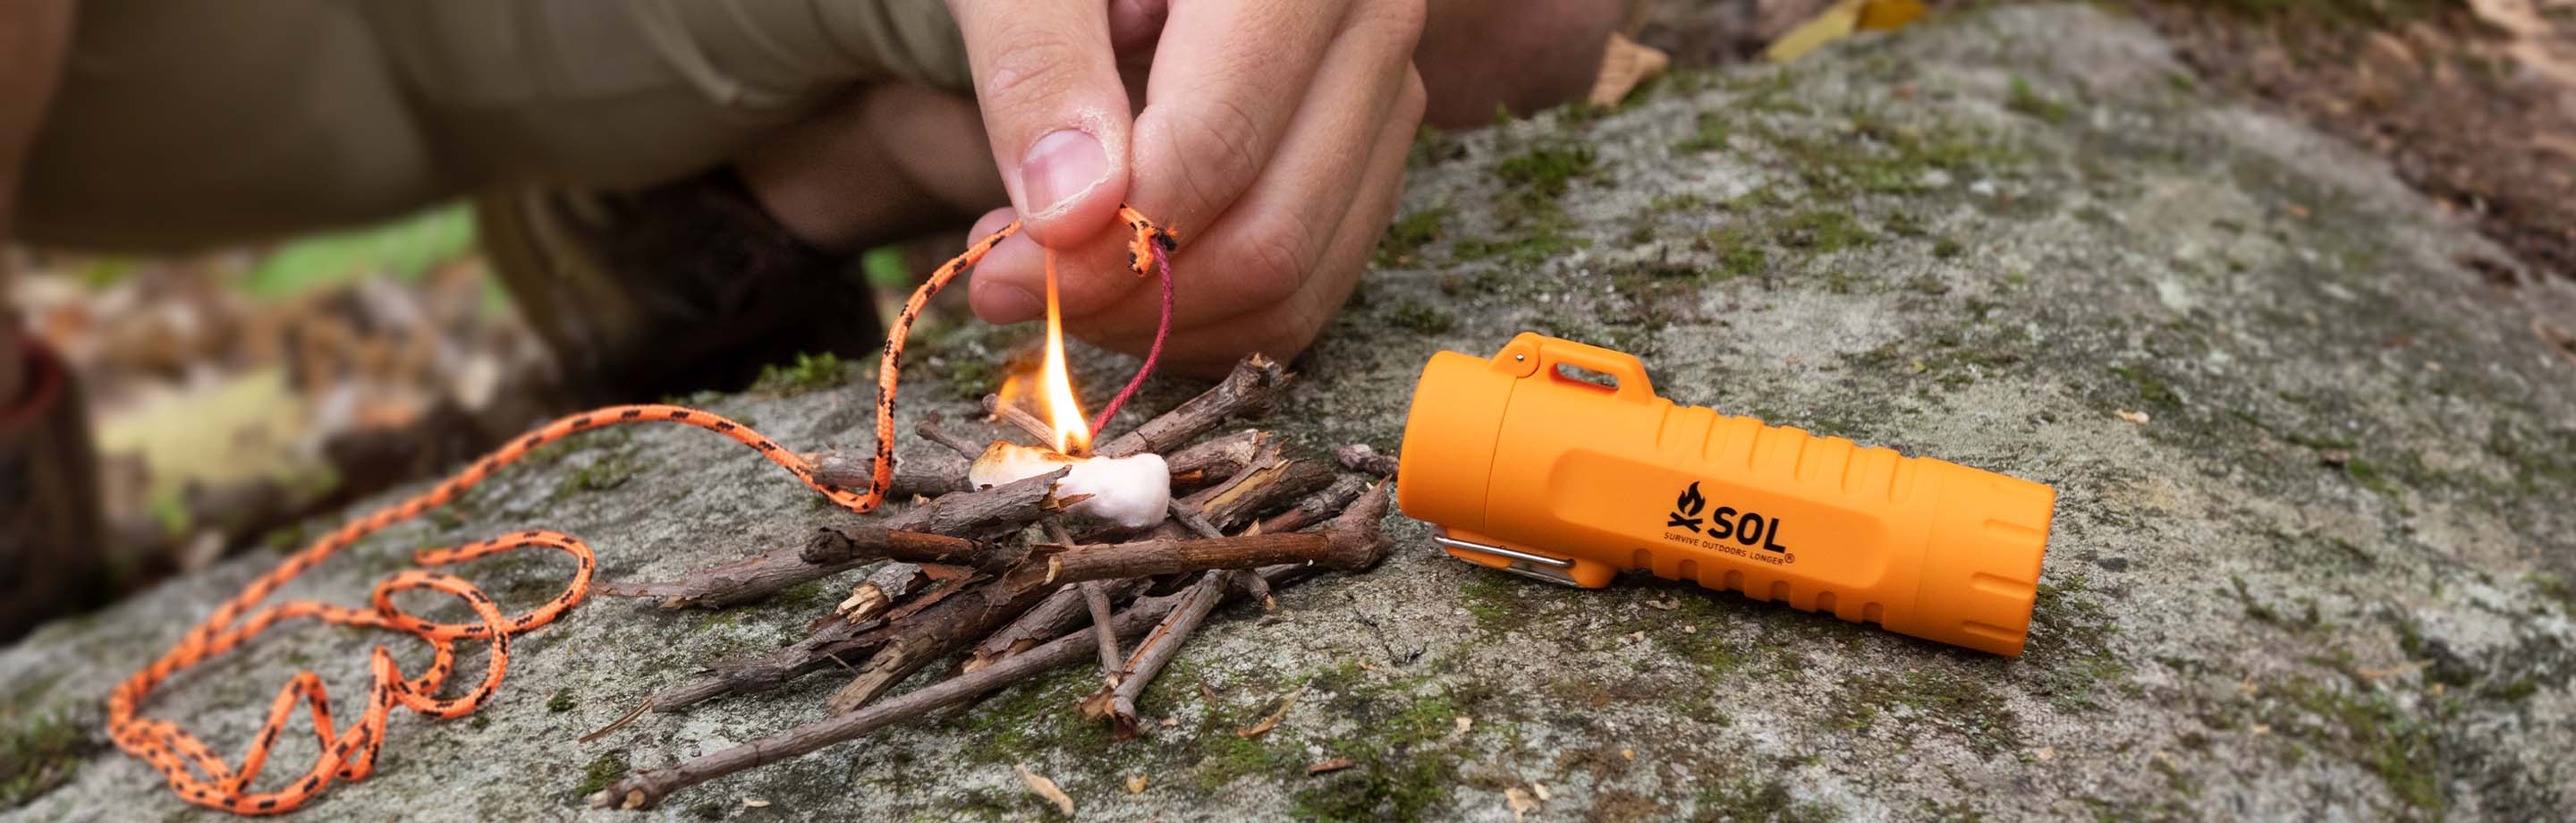 SOL Survival - bushcrafting-accessoires voor je outdoor-avontuur